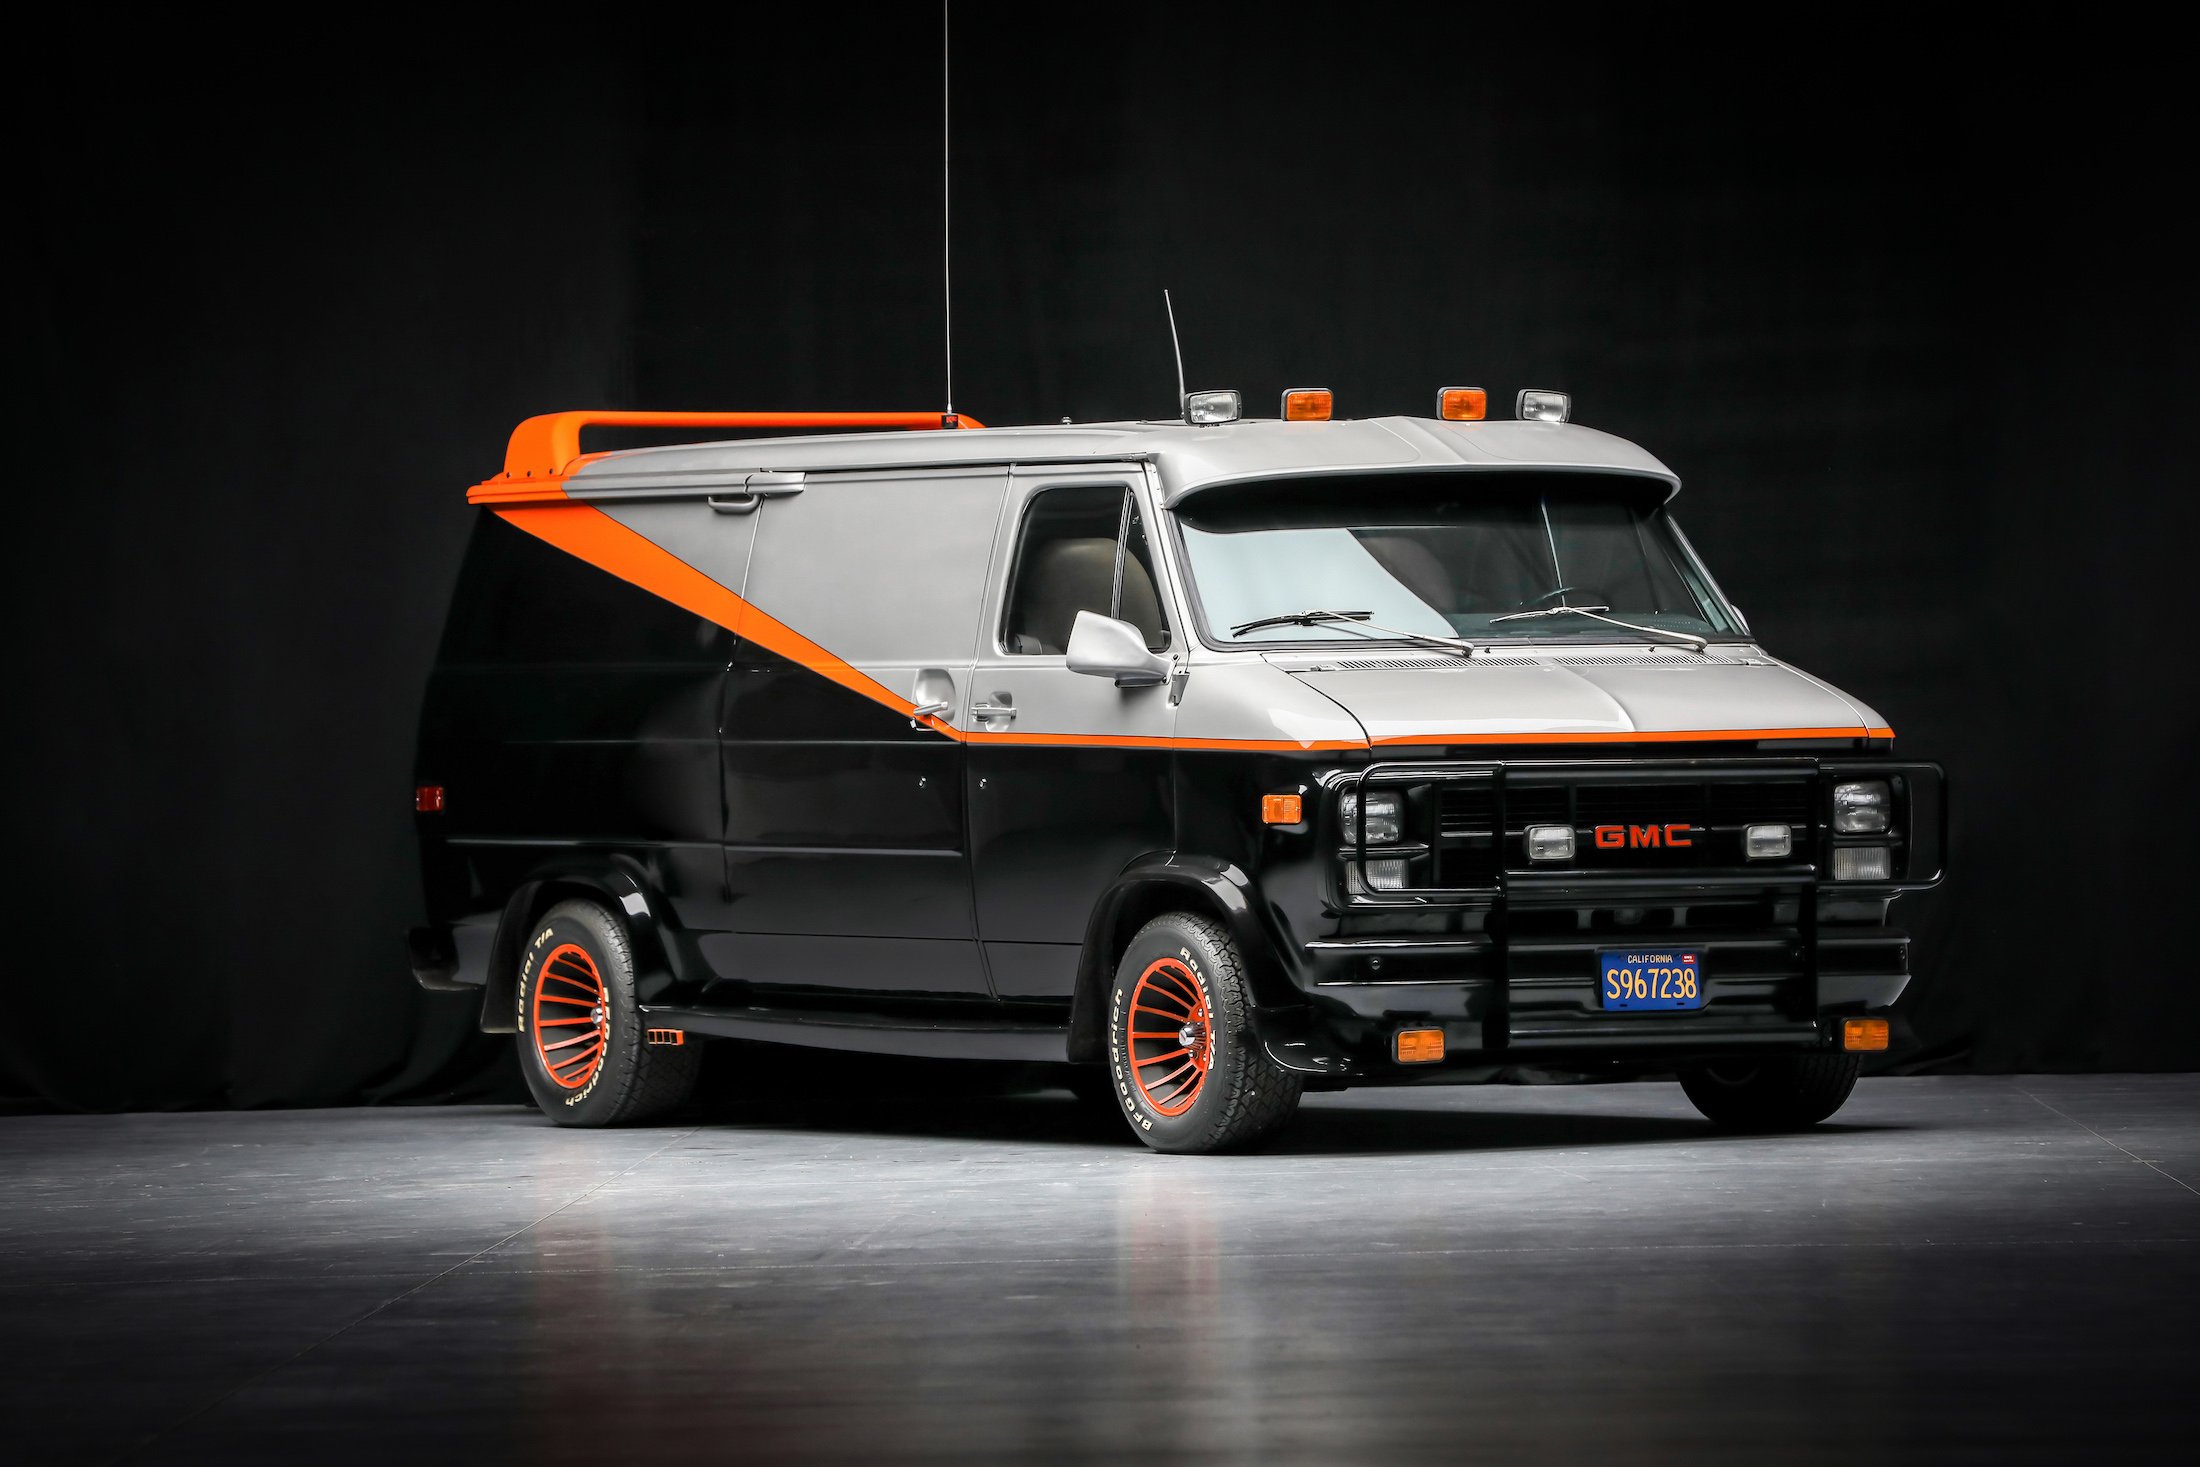 For Sale: Van – 1 of 6